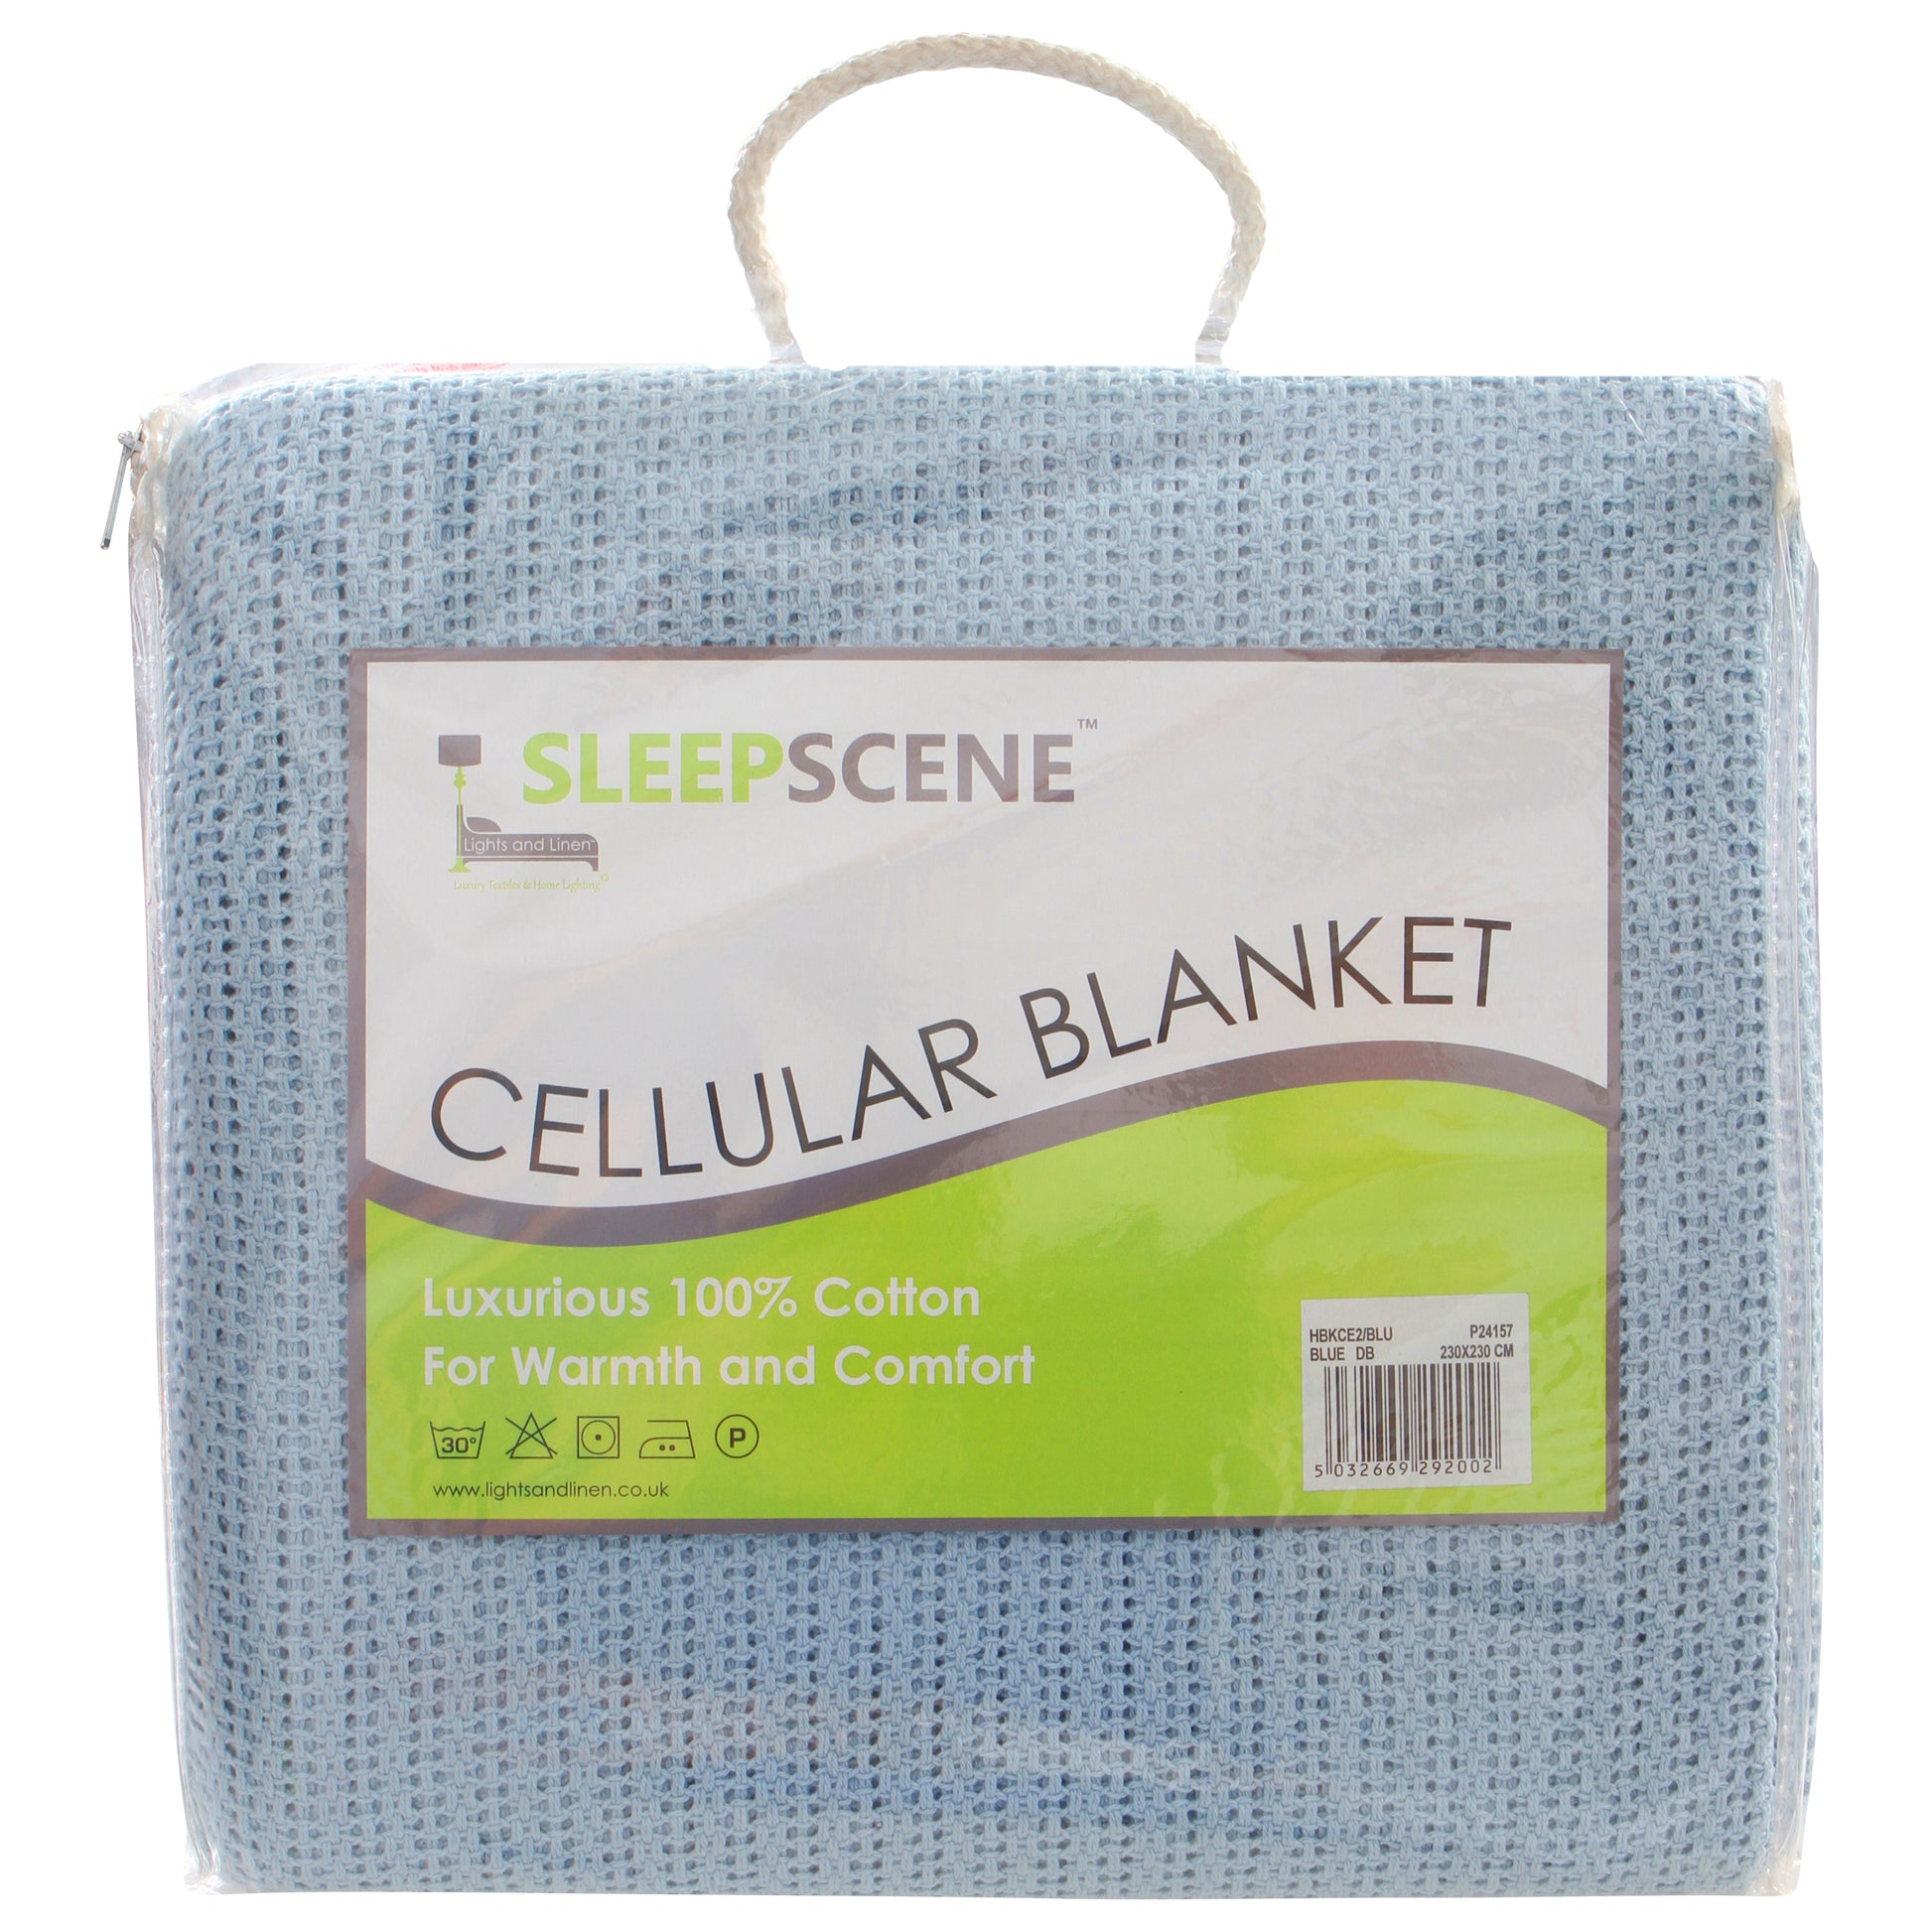 Sleepscene Cellular Blanket in Blue (Various sizes available)